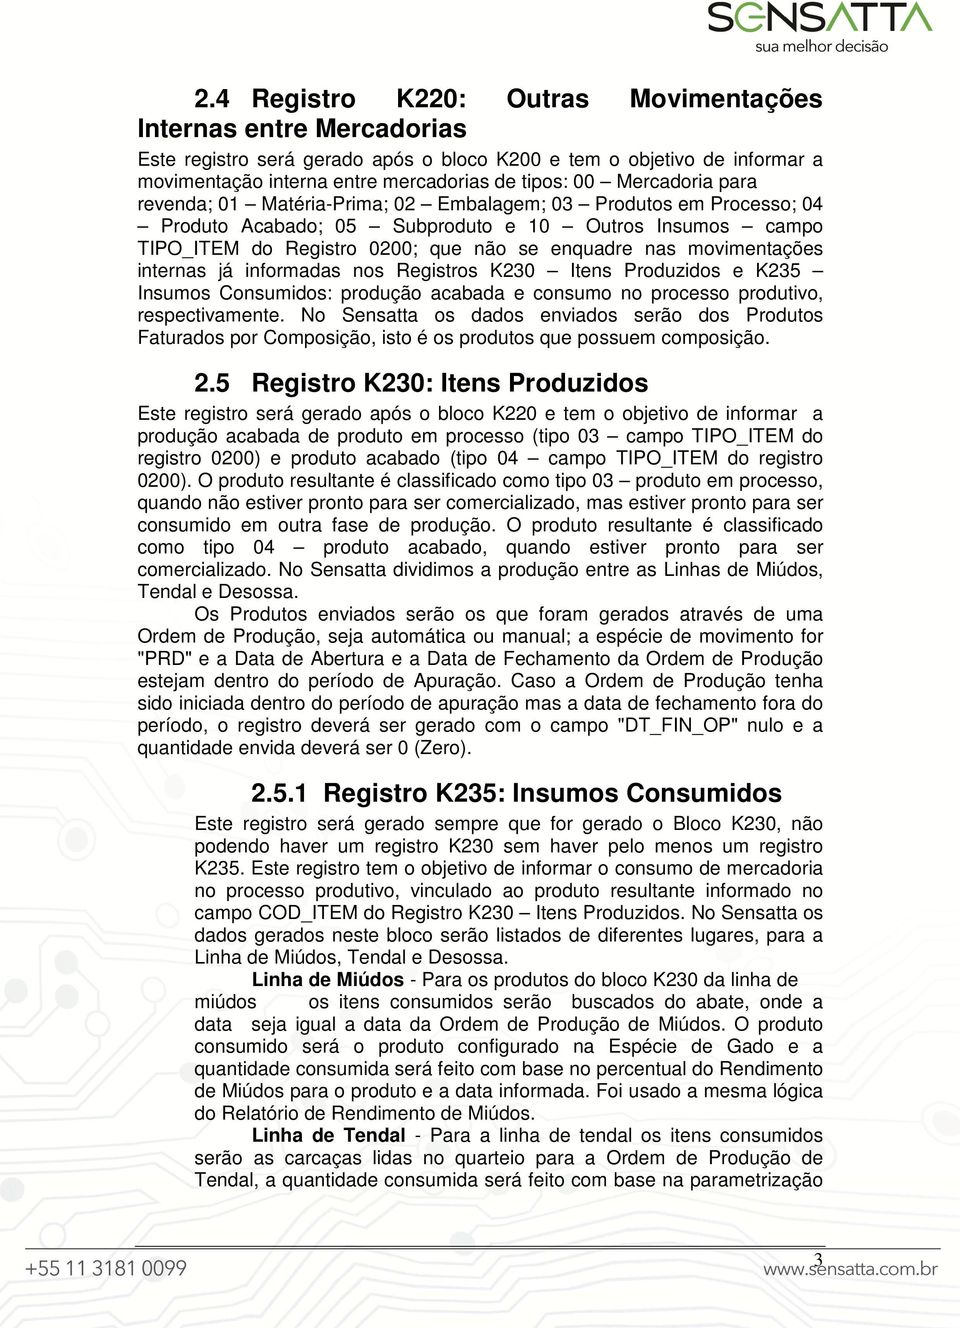 movimentações internas já informadas nos Registros K230 Itens Produzidos e K235 Insumos Consumidos: produção acabada e consumo no processo produtivo, respectivamente.